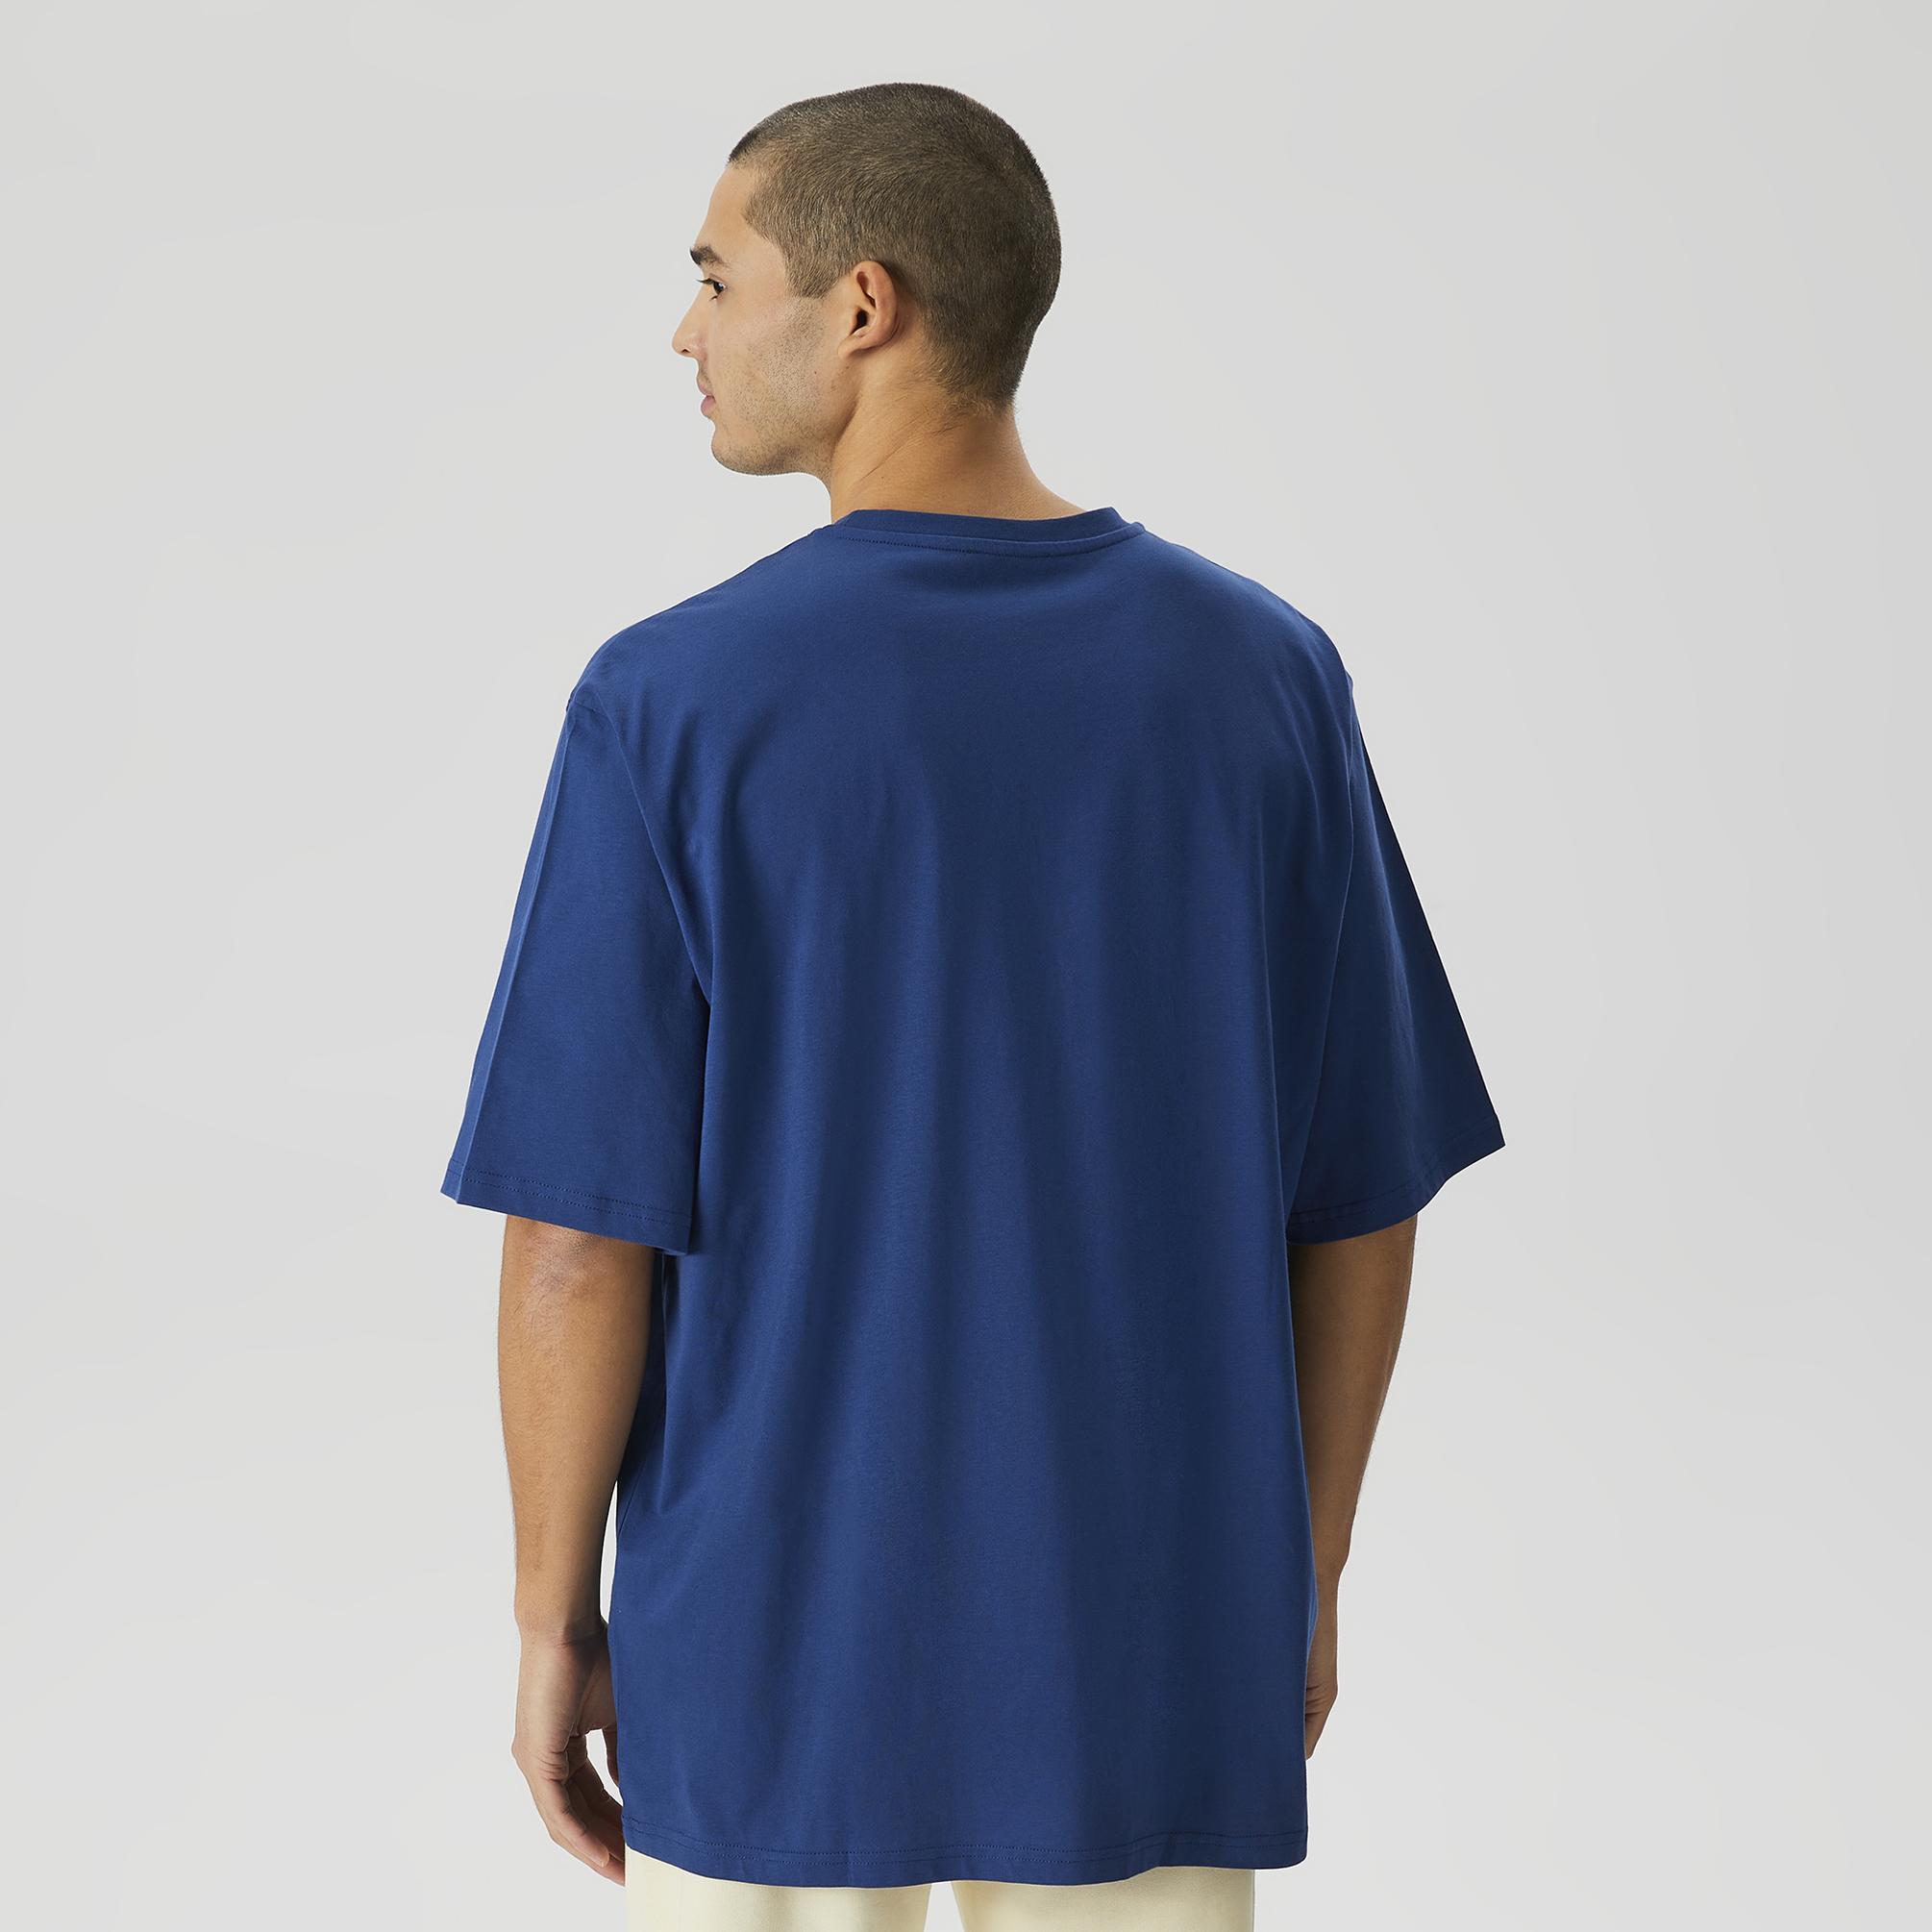  Les Benjamins Core Unisex Lacivert T-Shirt